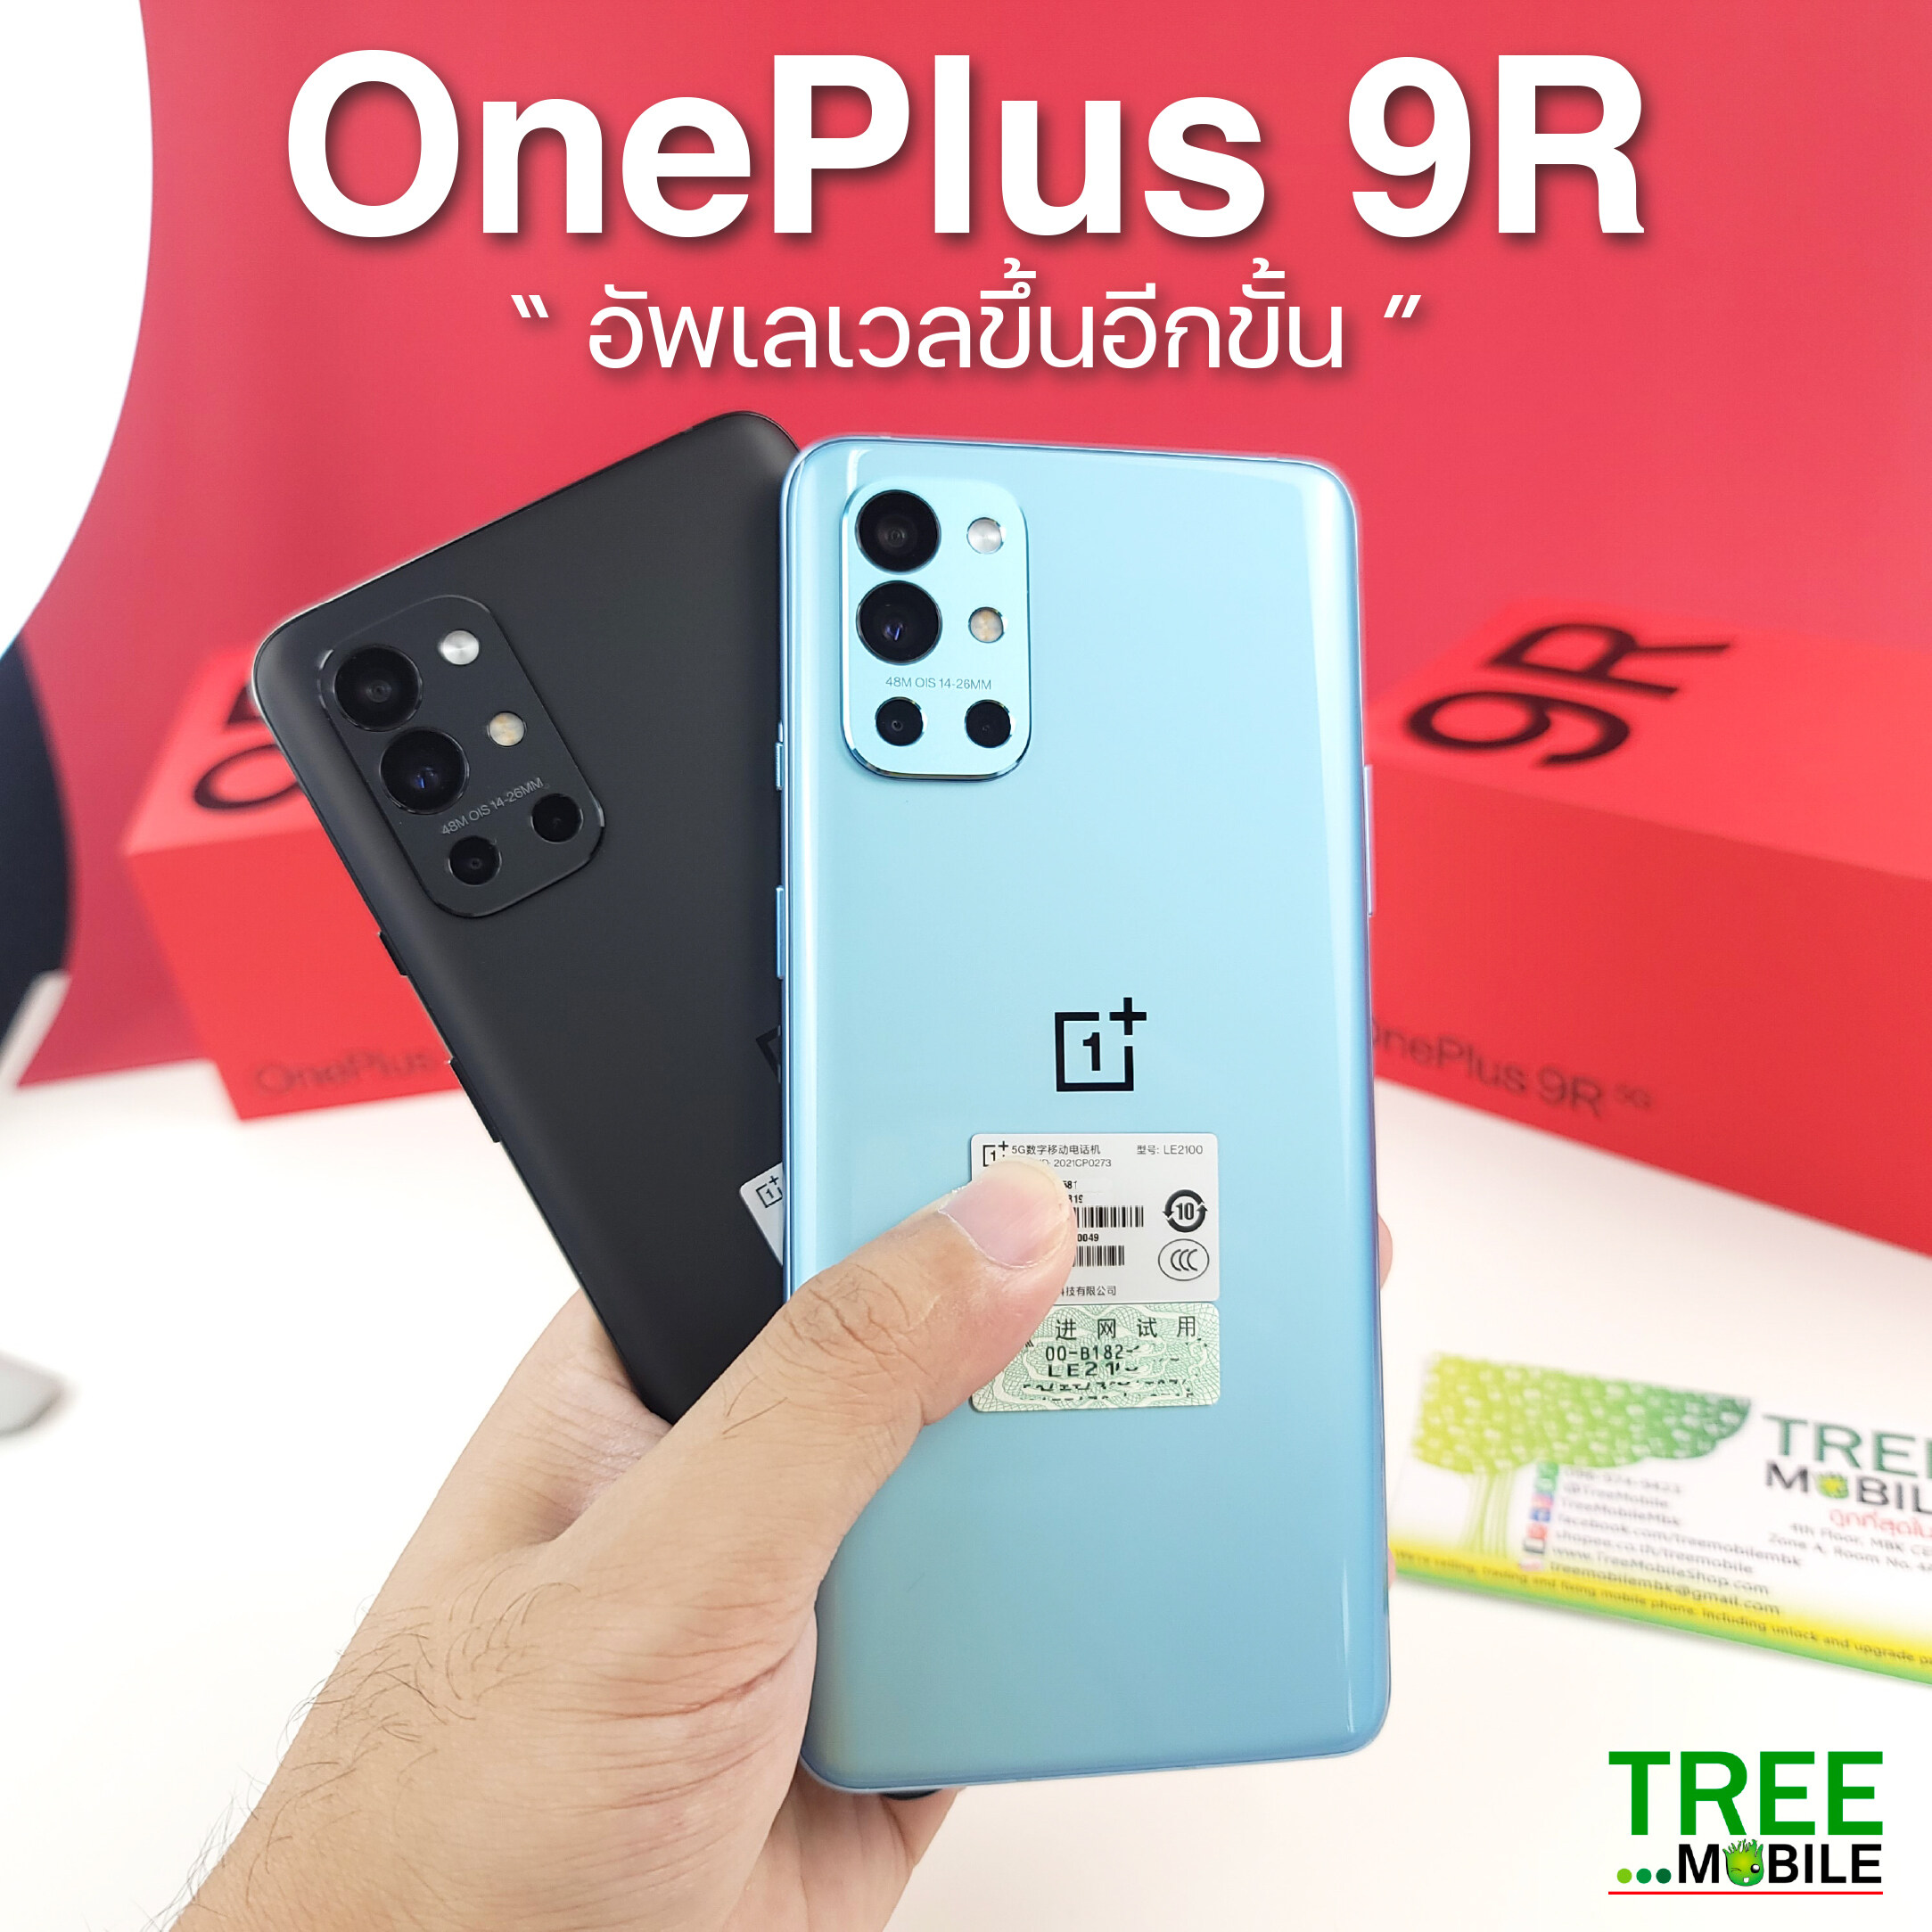 พร้อมส่ง OnePlus 9R Snapdragon 870 🐲 8/128GB Ram8/256GB วันพลัส 9 โปร Hasselblad SD870 จอเทพ 120Hz OxygenOS 4G 5G WarpCharge 65W Android 11 Flash Flashship phone 4500 mAh เกมมิ้งโฟน ร้าน TreeMobile / Tree Mobile